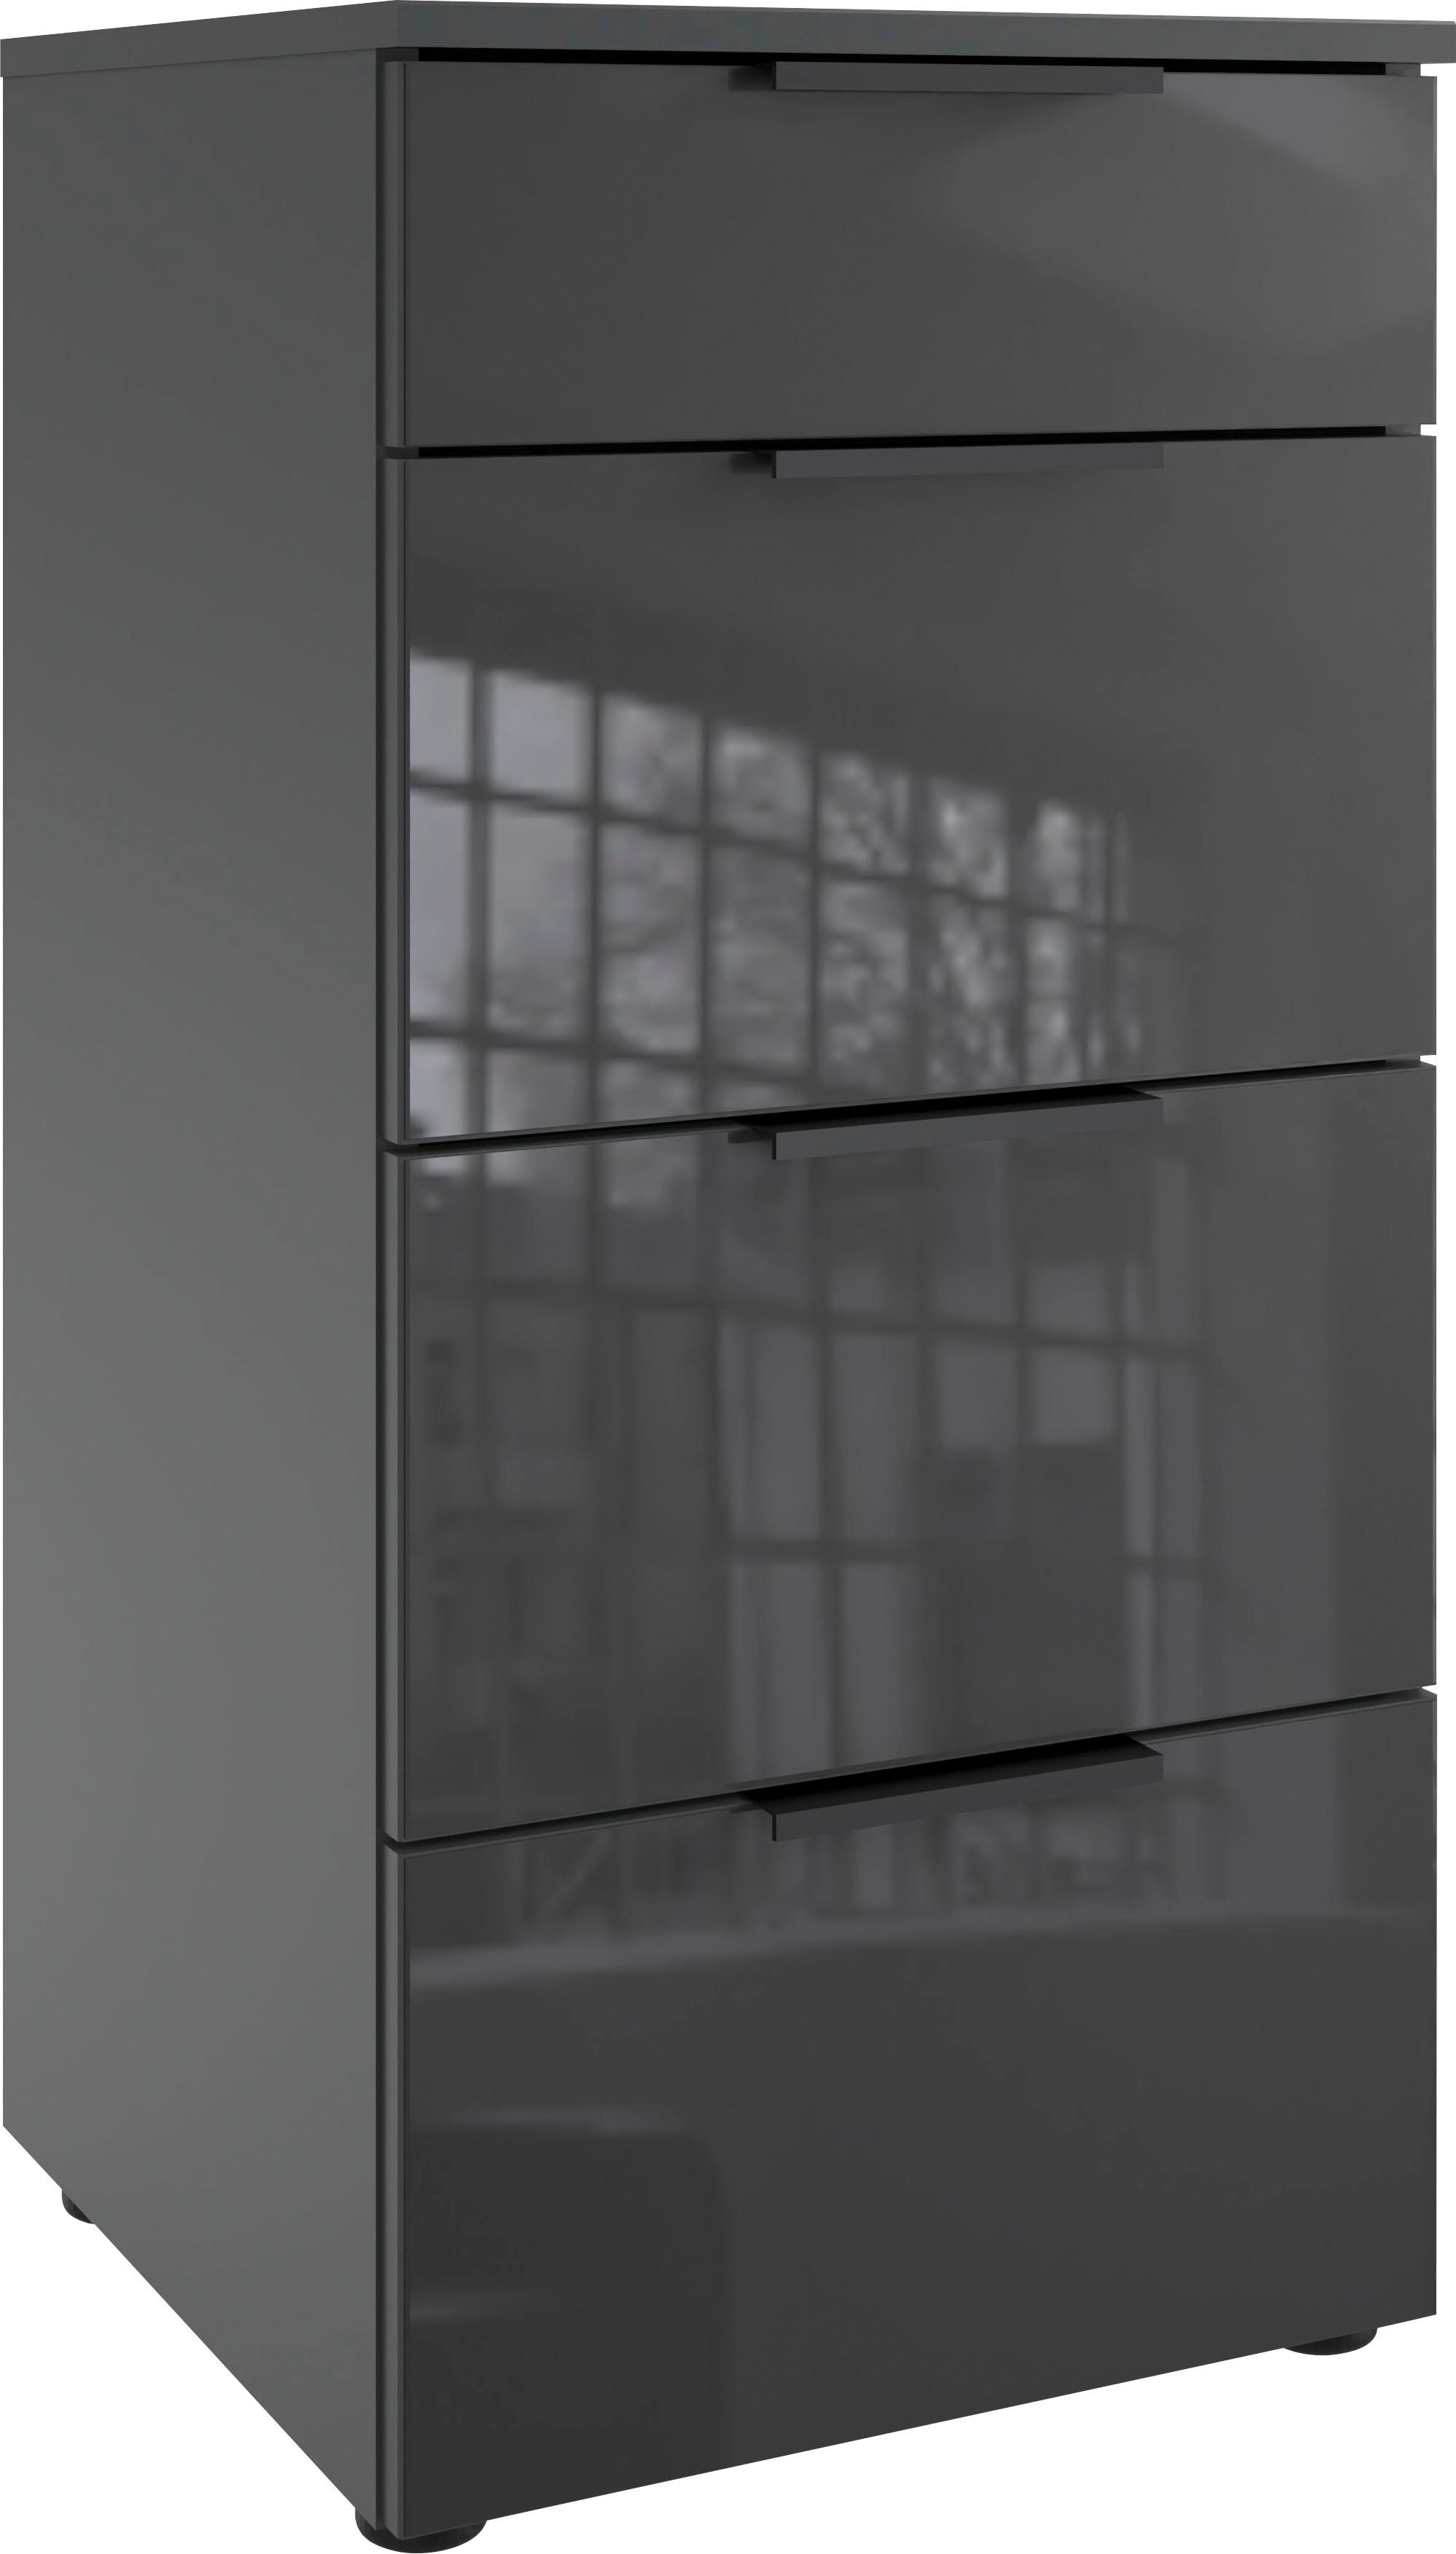 wimex ladekast level36 black c by fresh to go met glazen elementen aan de voorkant, soft-close functie, 41 cm breed wit